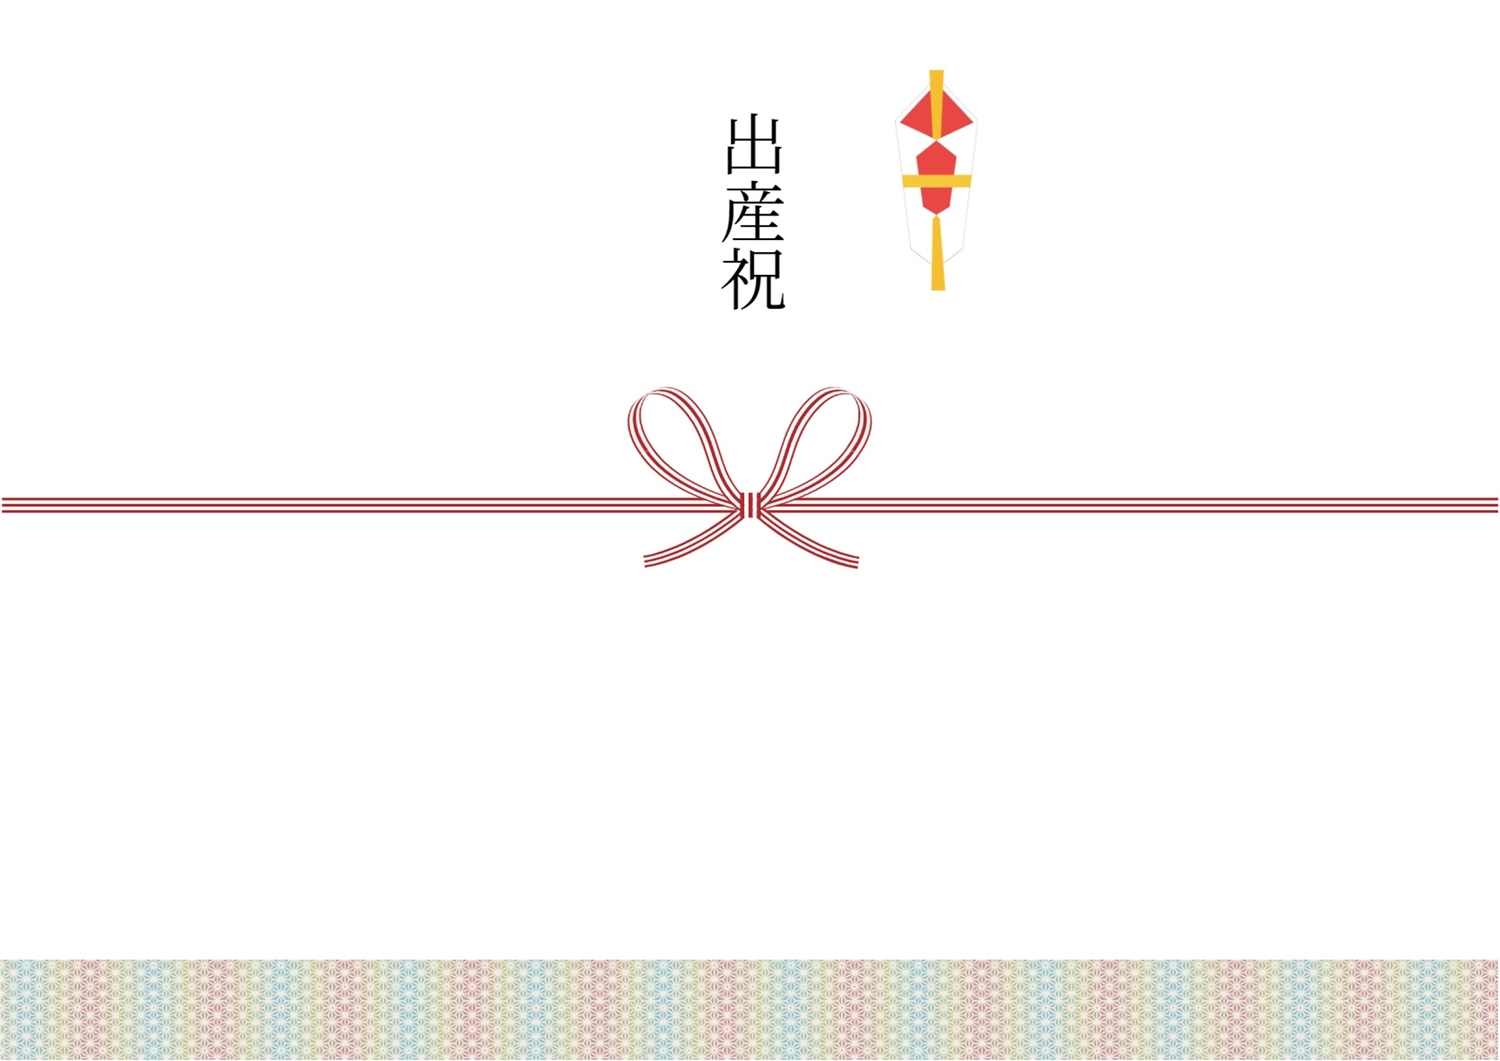 出産祝, the iron, business, celebration, Sales promotion tool template